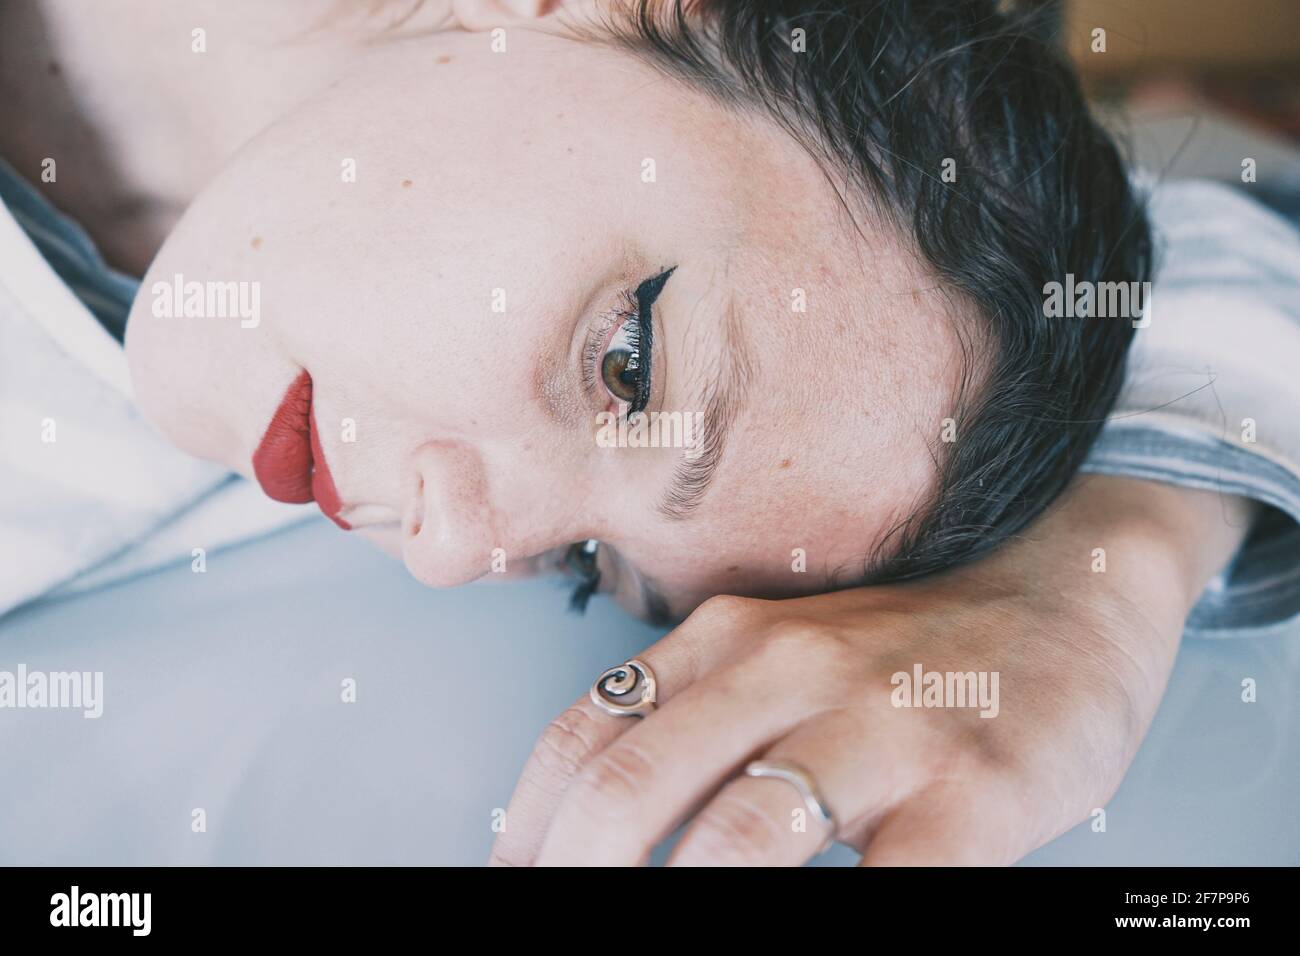 Portrait d'une jeune femme penchée son visage contre un table en verre froid Banque D'Images